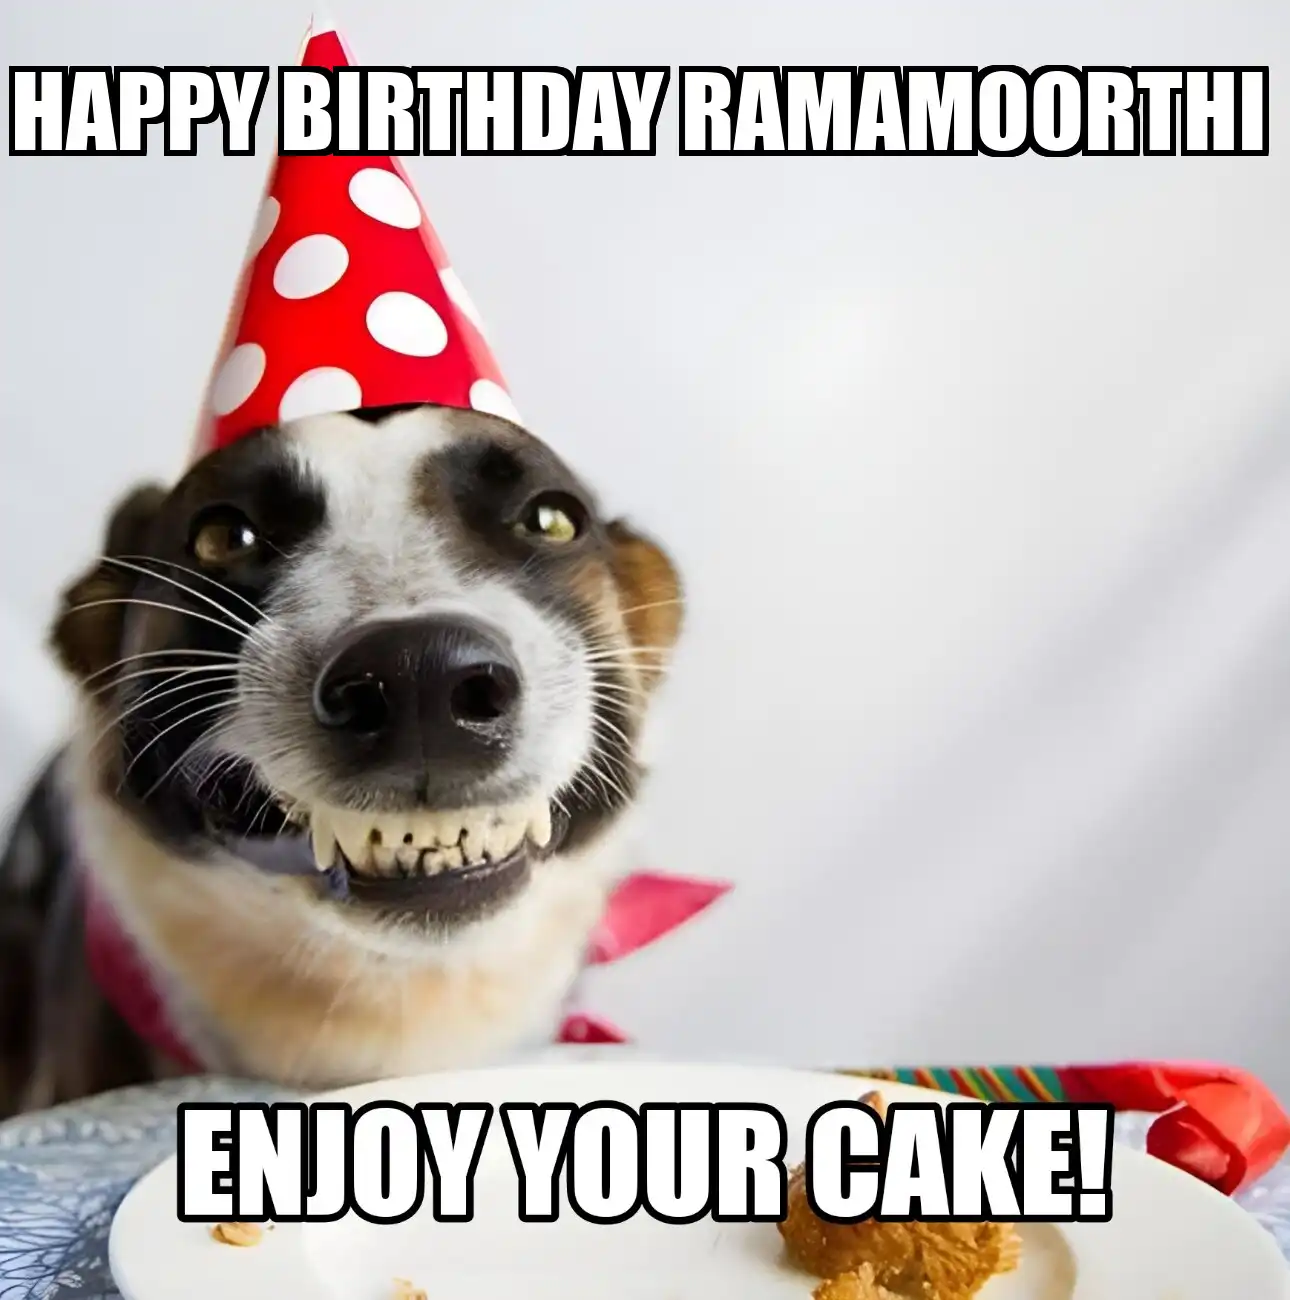 Happy Birthday Ramamoorthi Enjoy Your Cake Dog Meme